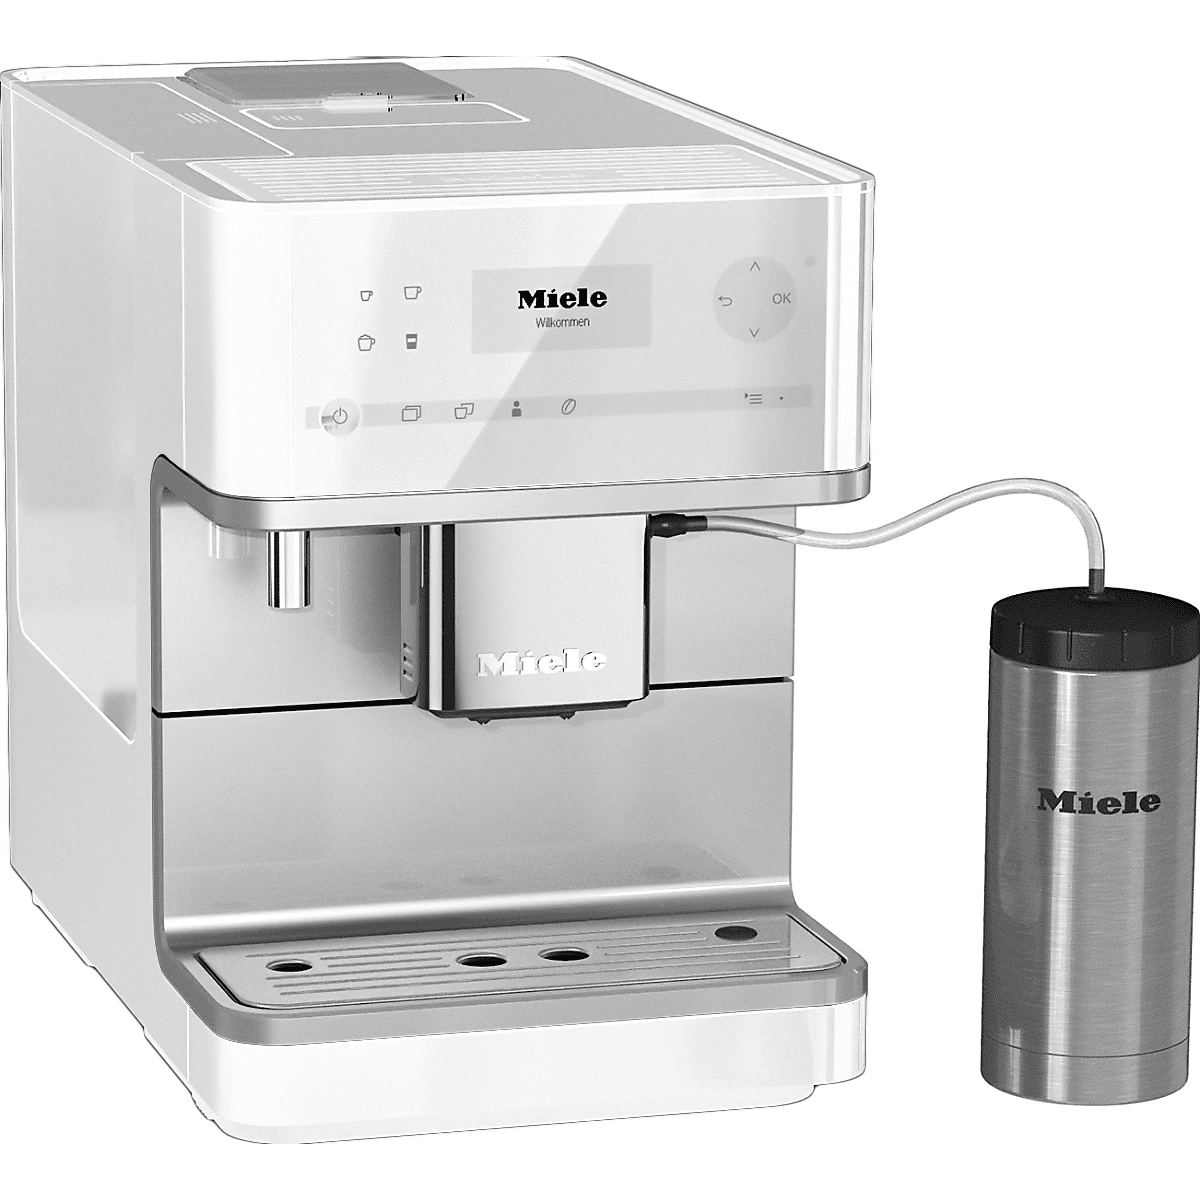 Miele Cm6350 Countertop Espresso Machine - Lotus White